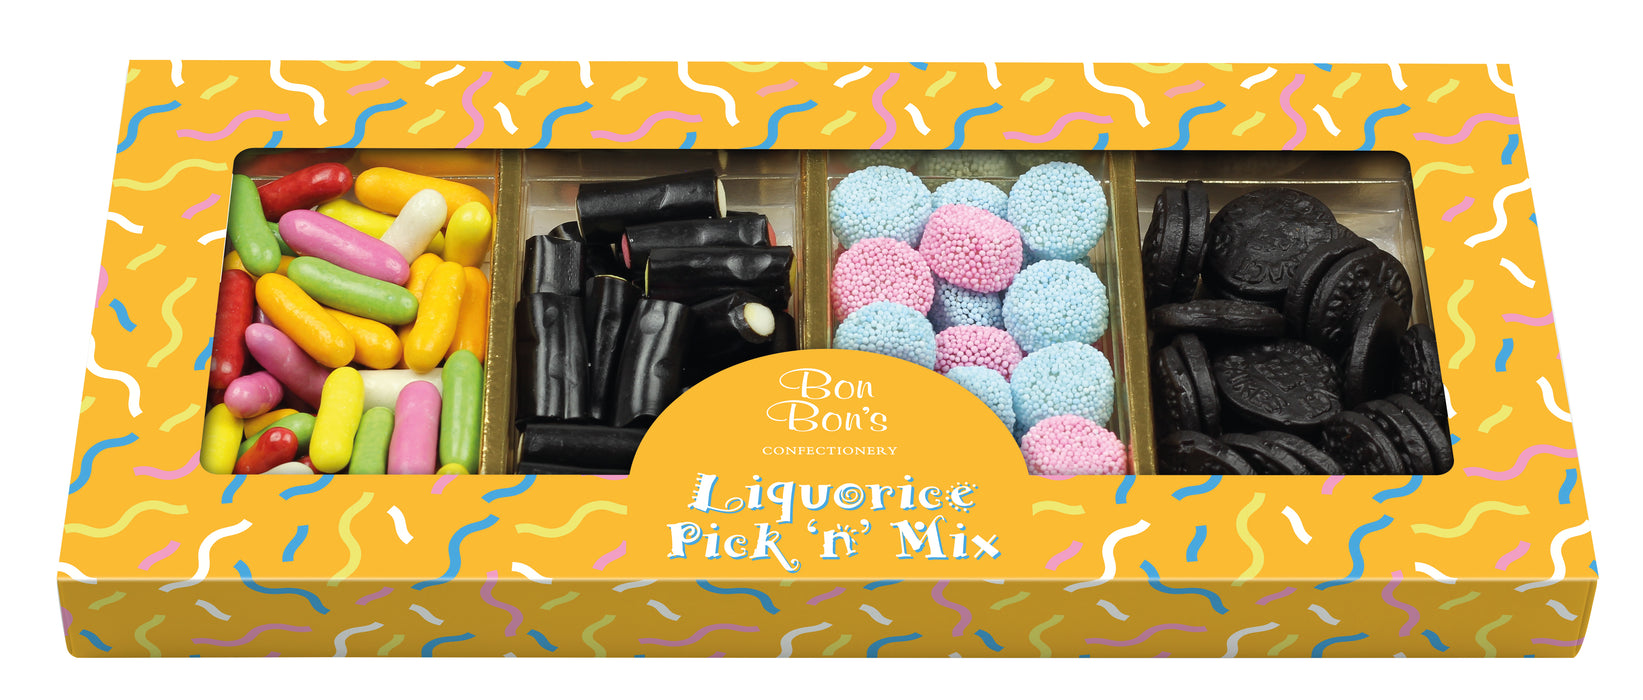 Bon Bon's Liquorice Pick 'N' Mix Box